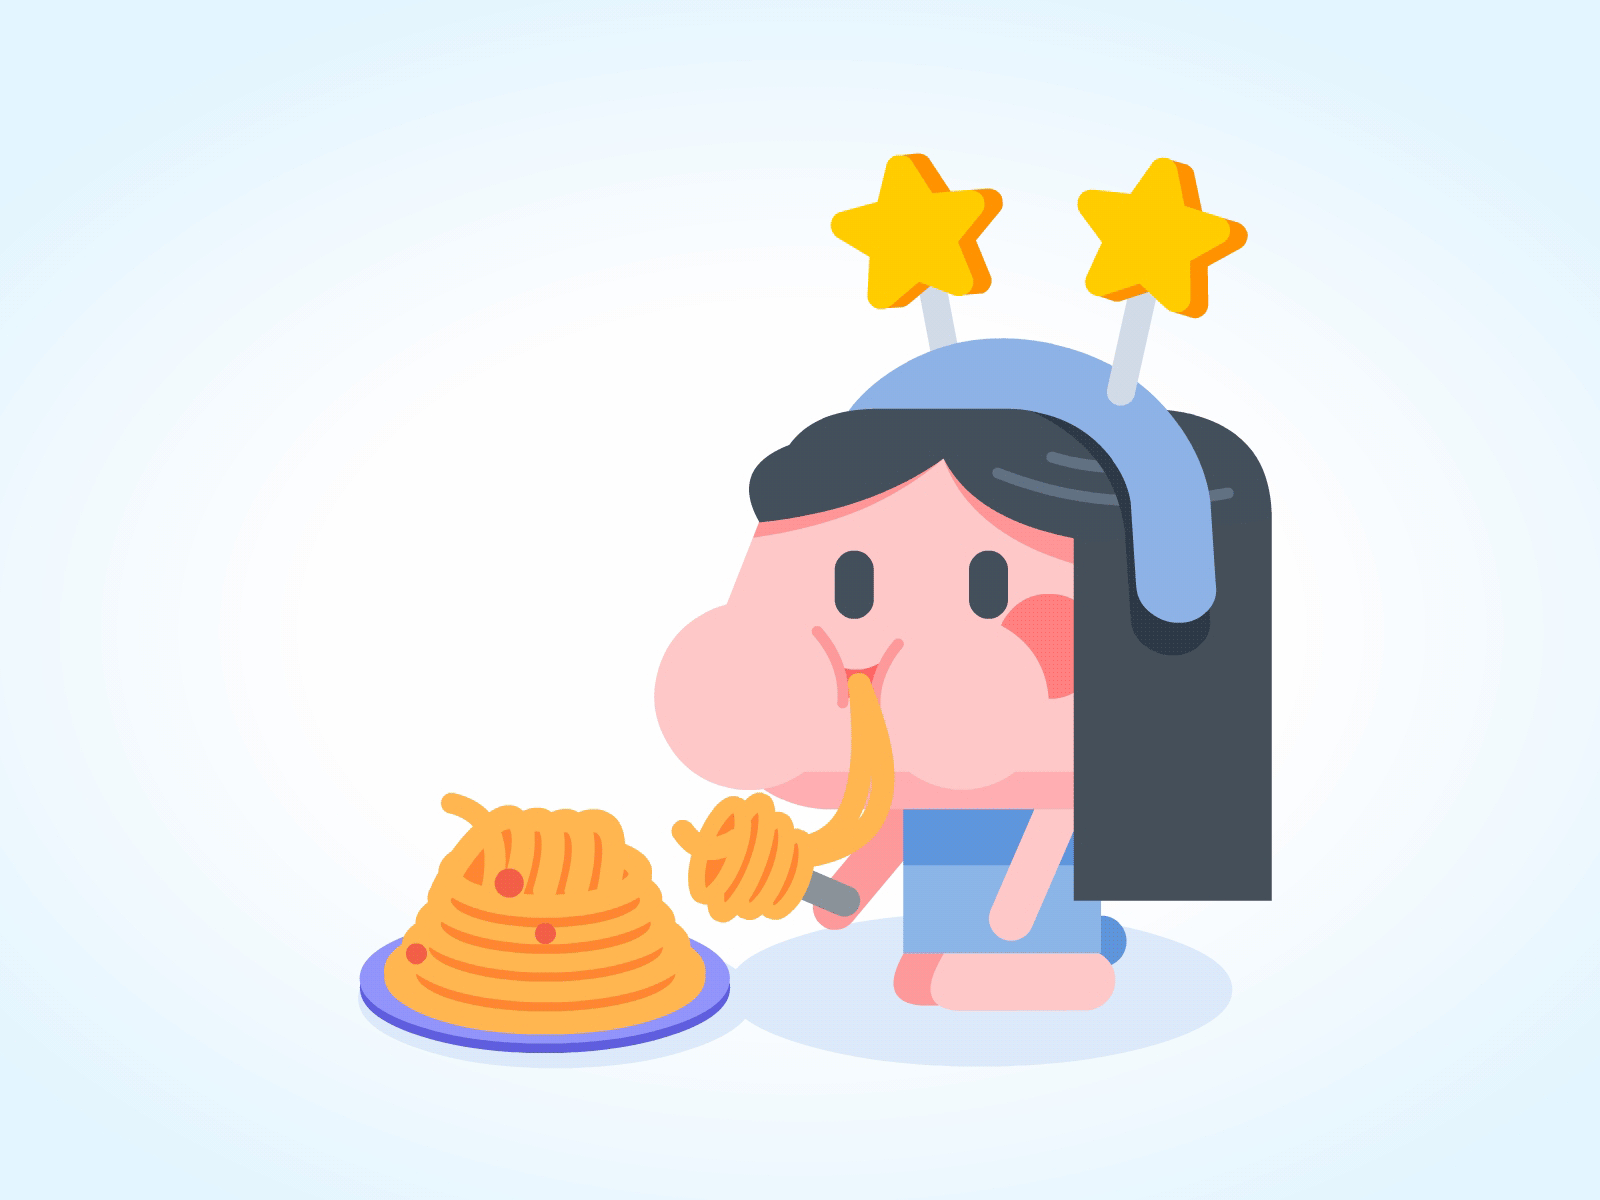 麦芽 Malt 2d animation character animation design emoji pasta